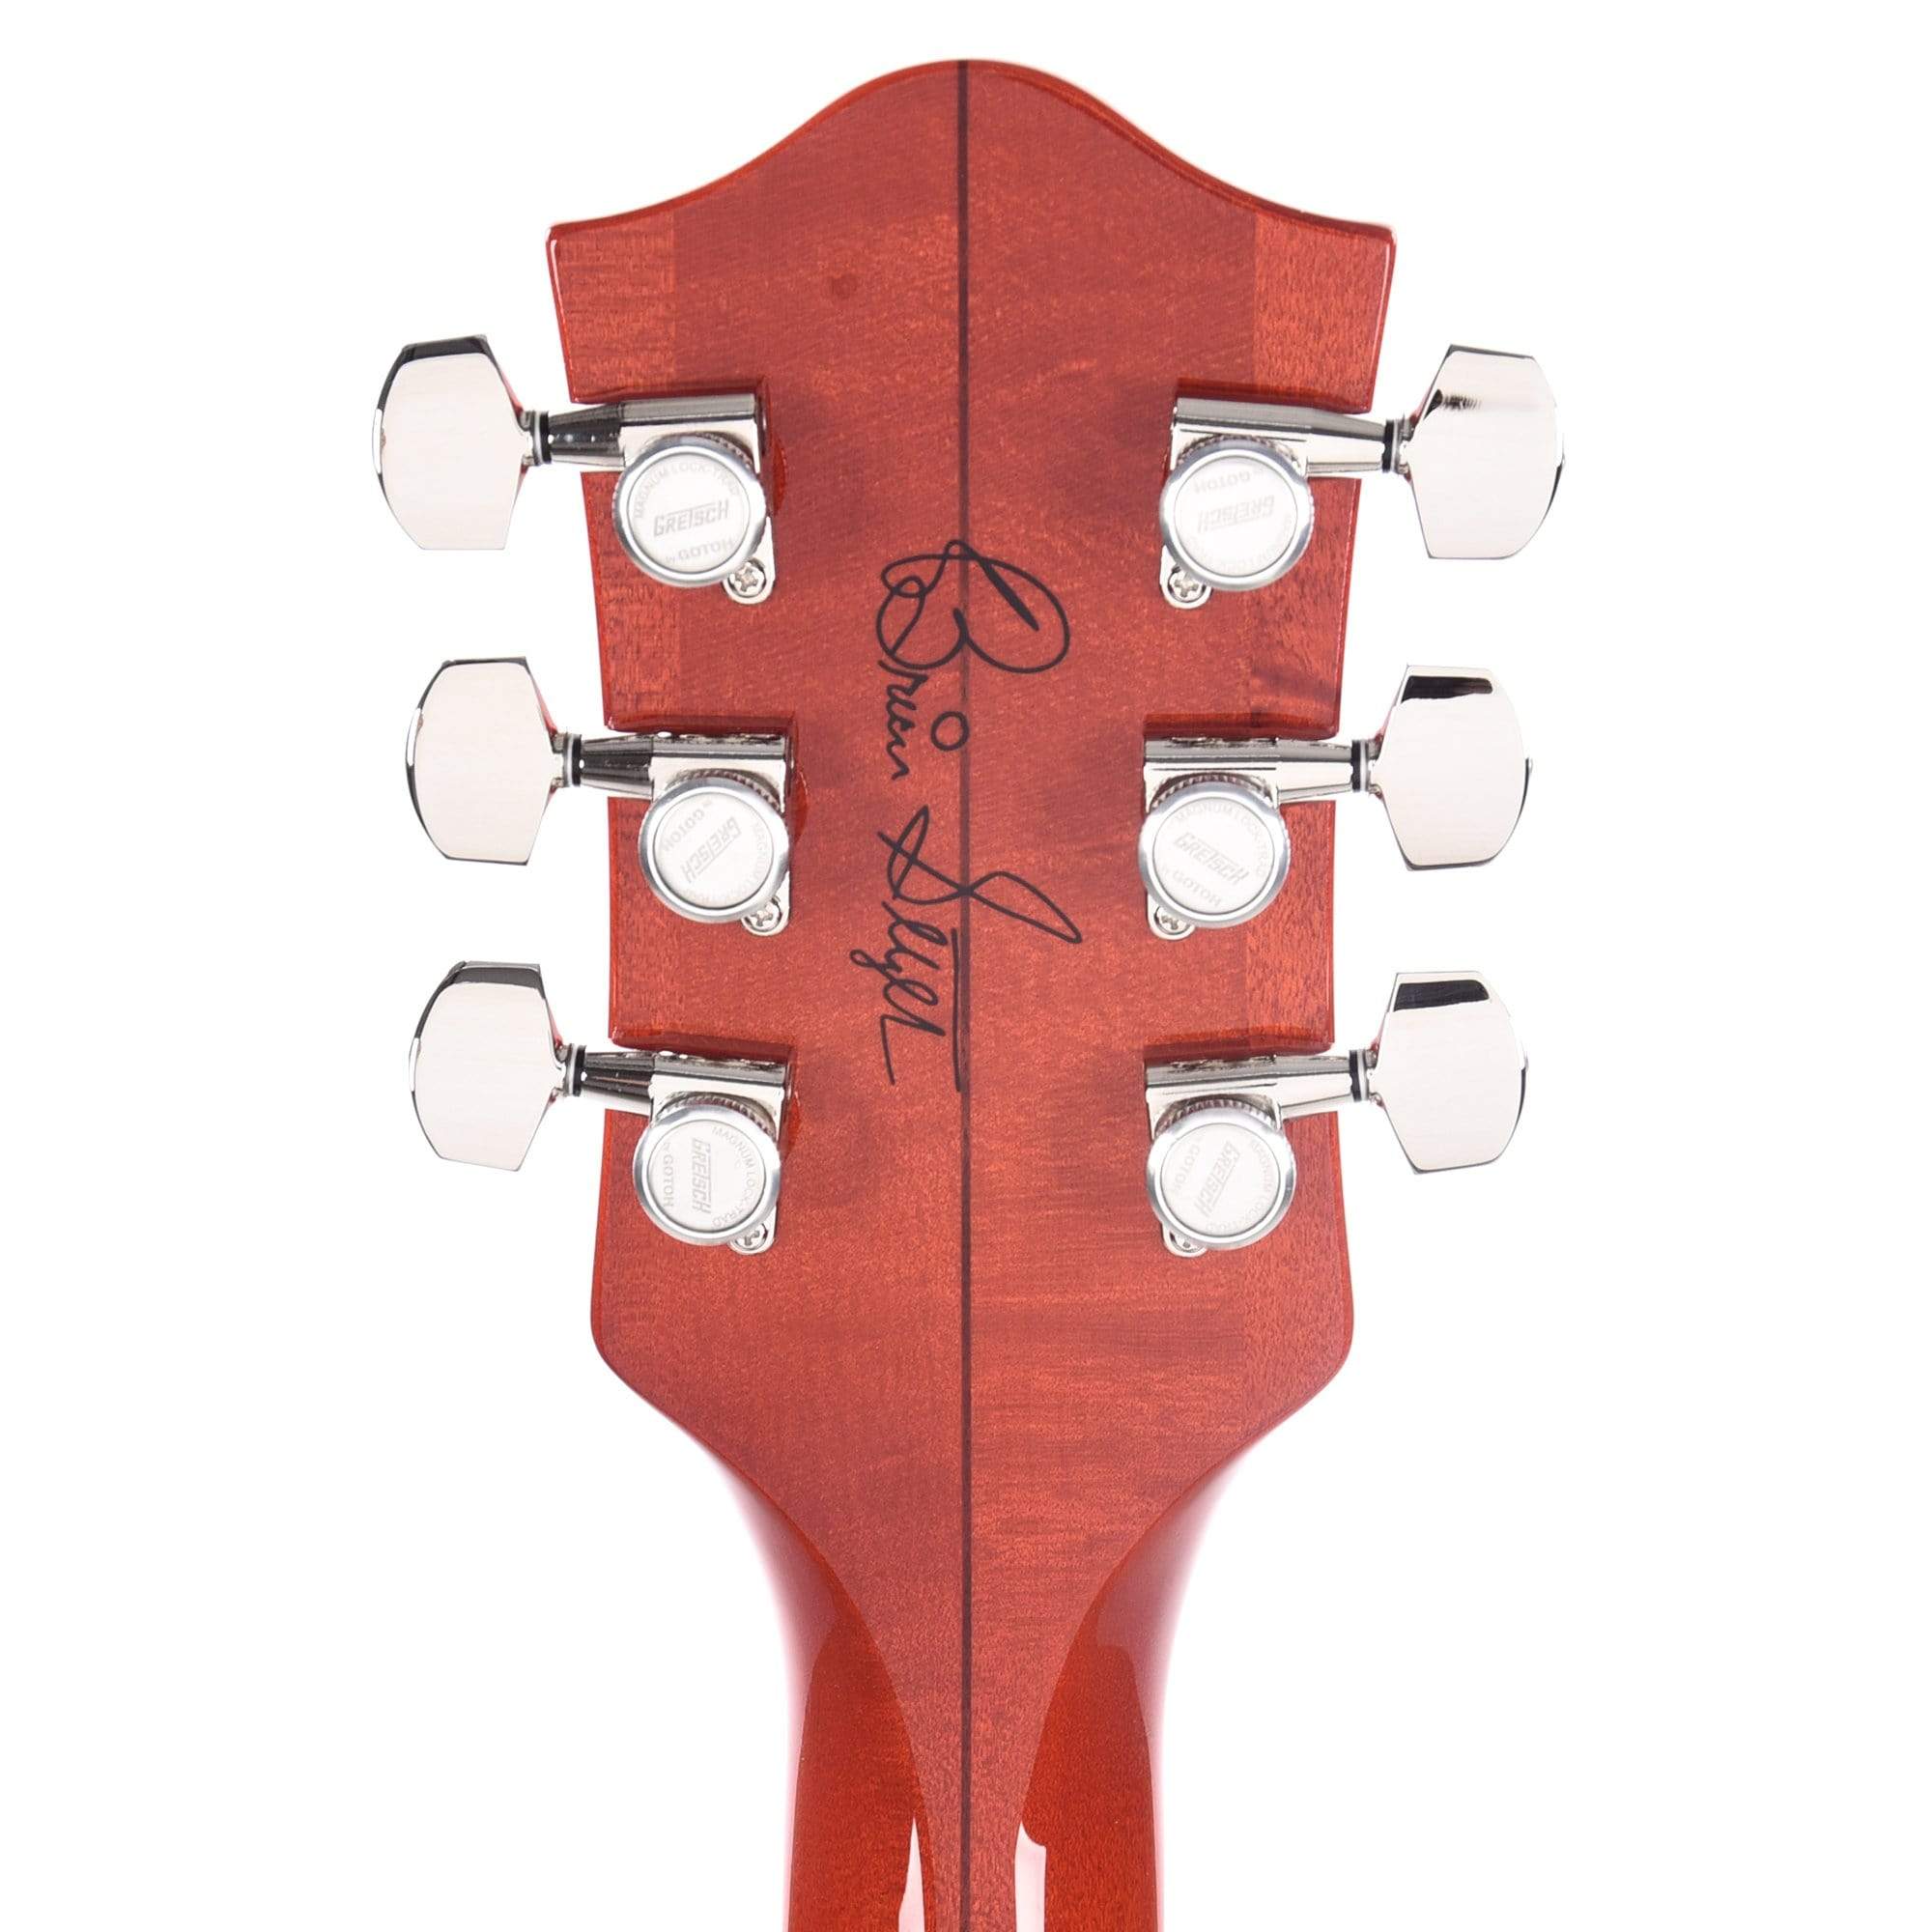 Gretsch G6120TFM-BSNV Brian Setzer Signature Nashville Orange Stain Electric Guitars / Hollow Body